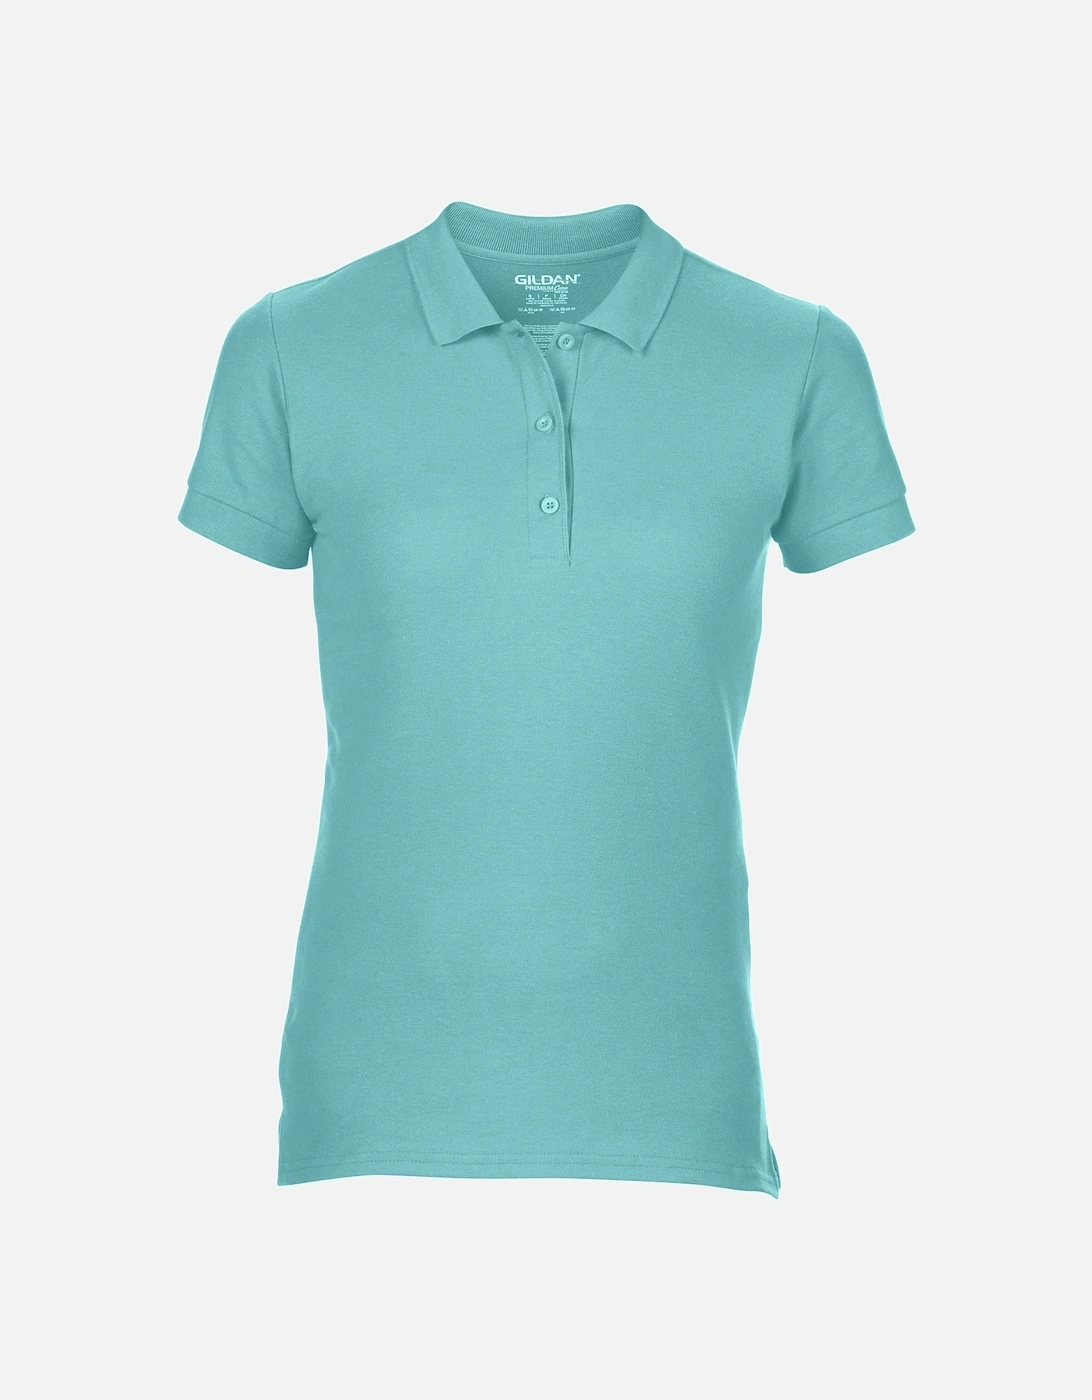 Womens/Ladies Premium Cotton Sport Double Pique Polo Shirt, 5 of 4